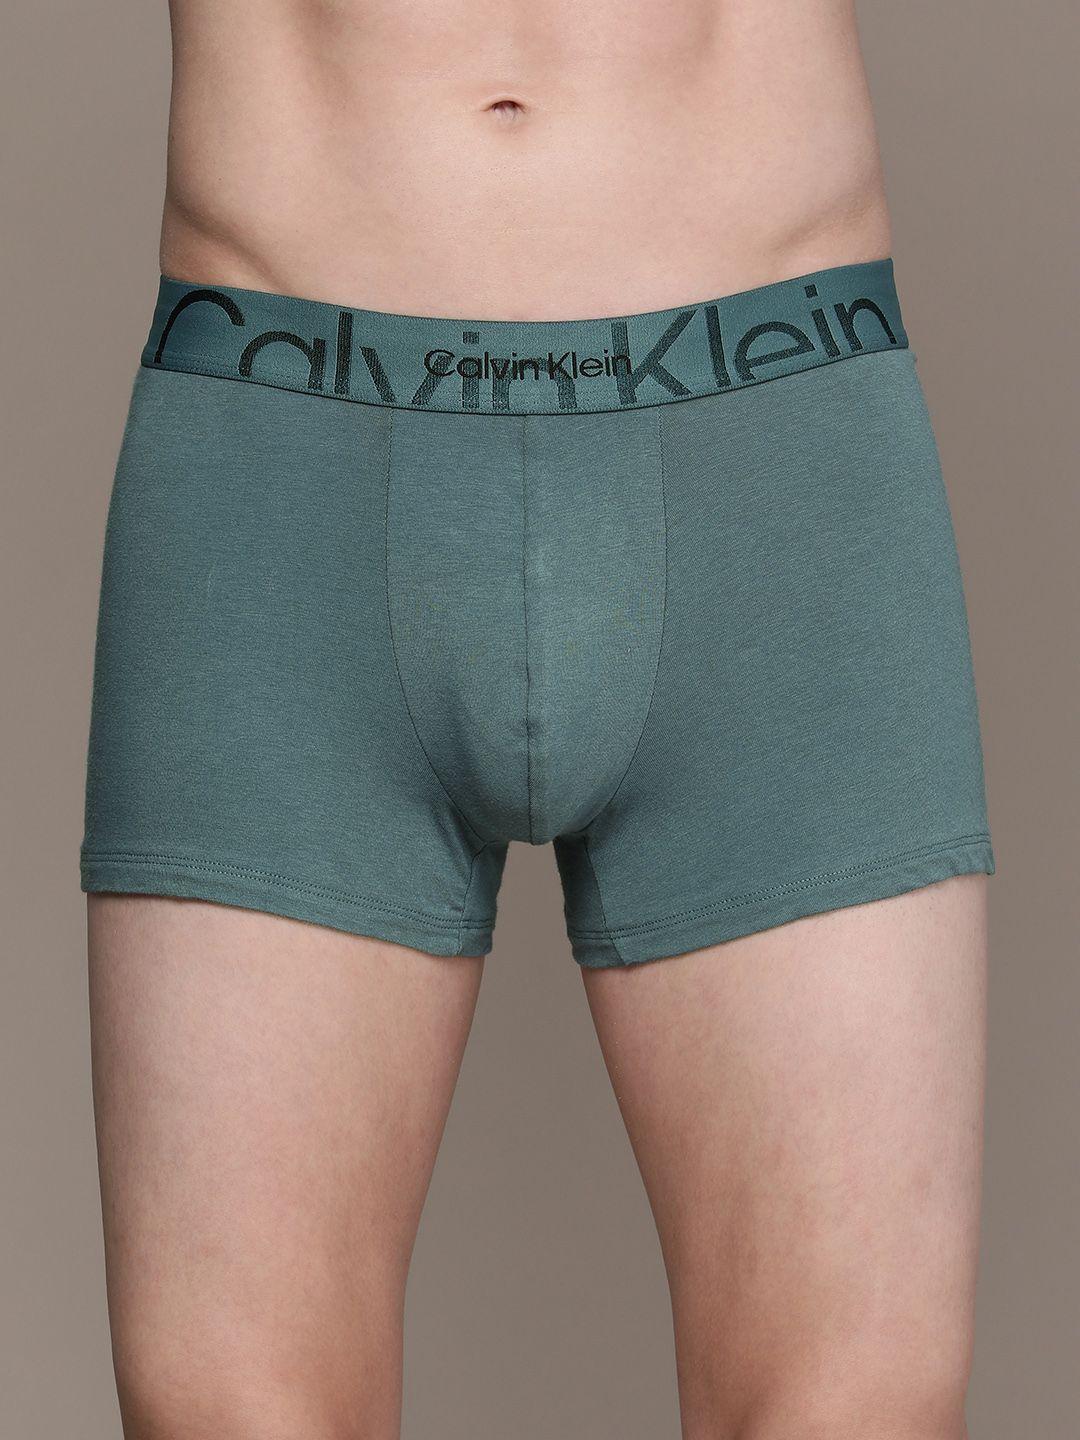 calvin-klein-underwear-men-blue-solid-trunk-nb3299da3